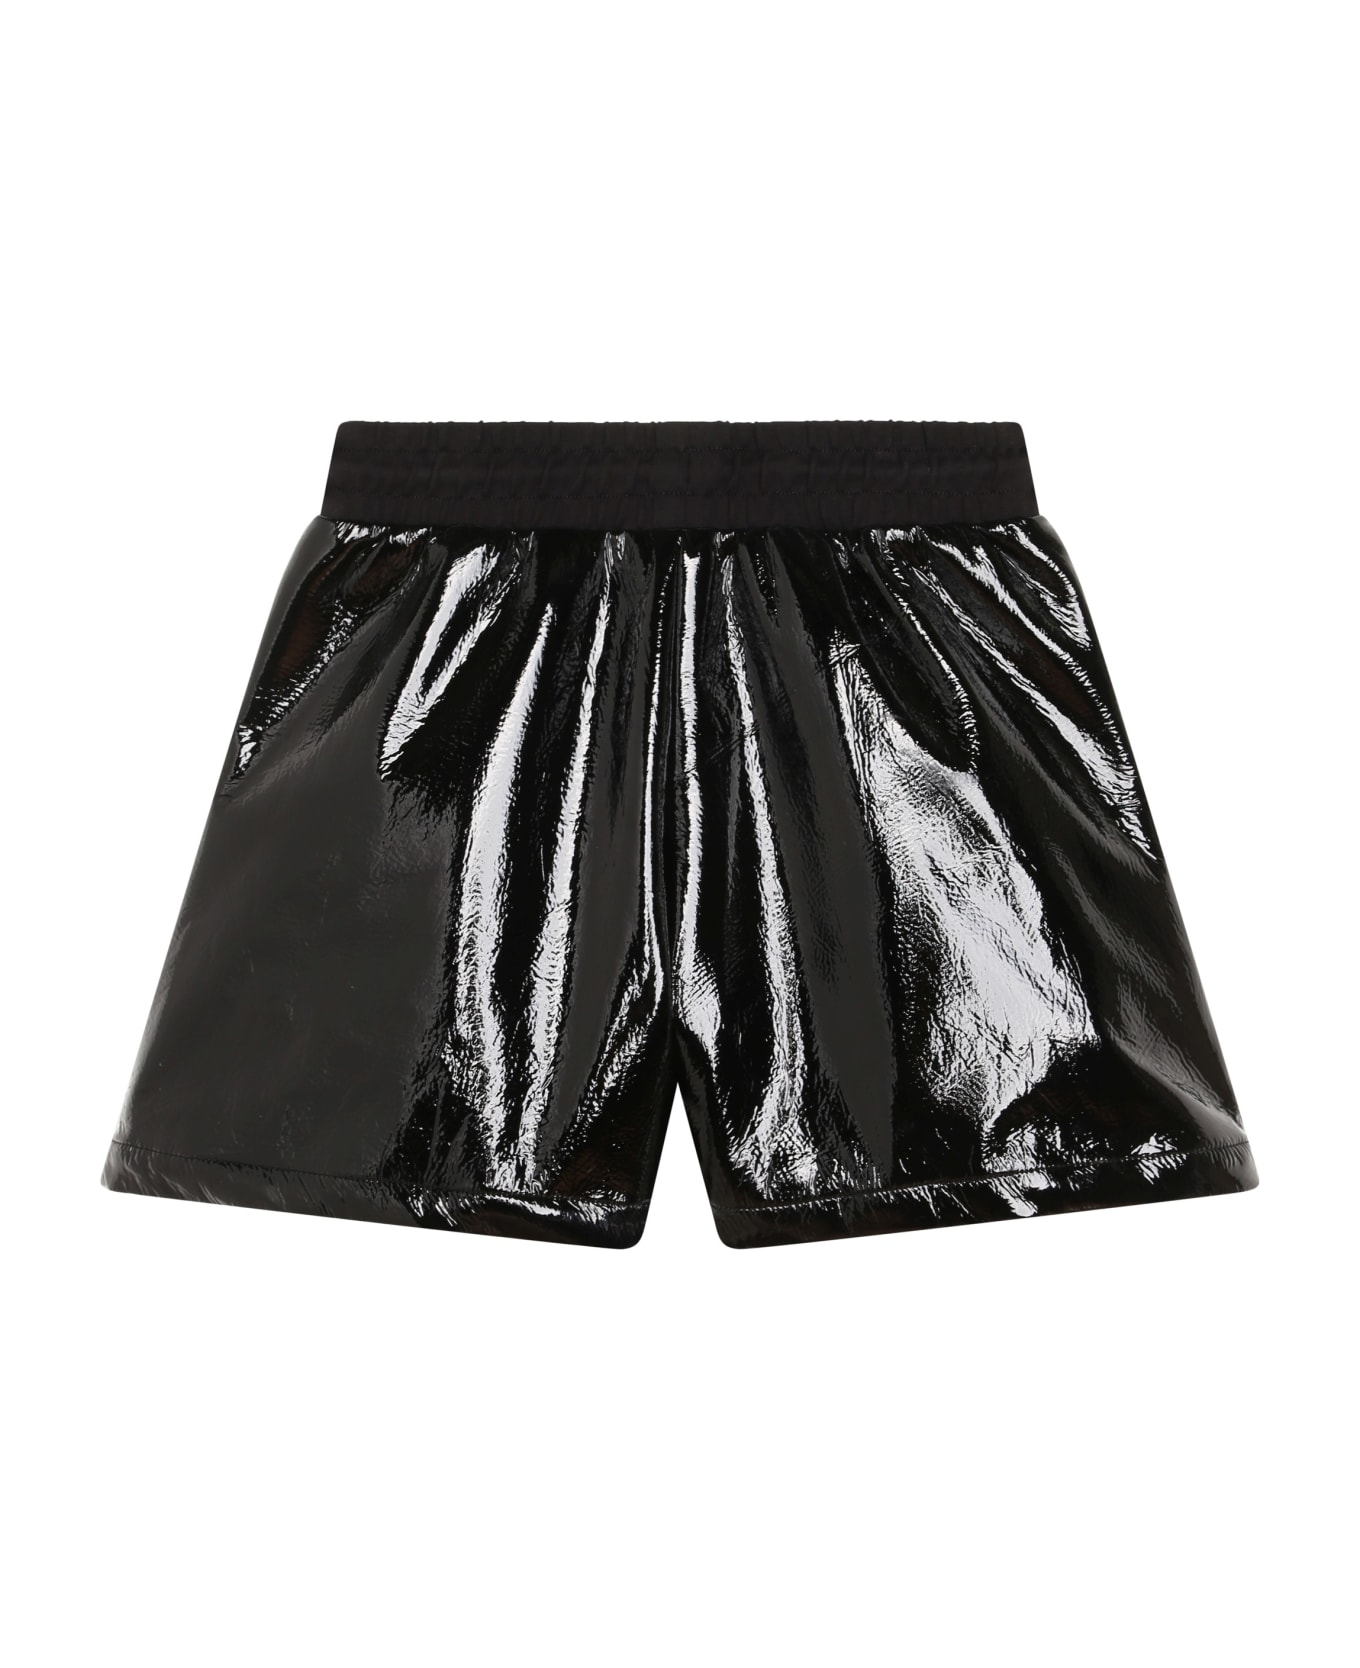 DKNY Shorts With Logo - Black